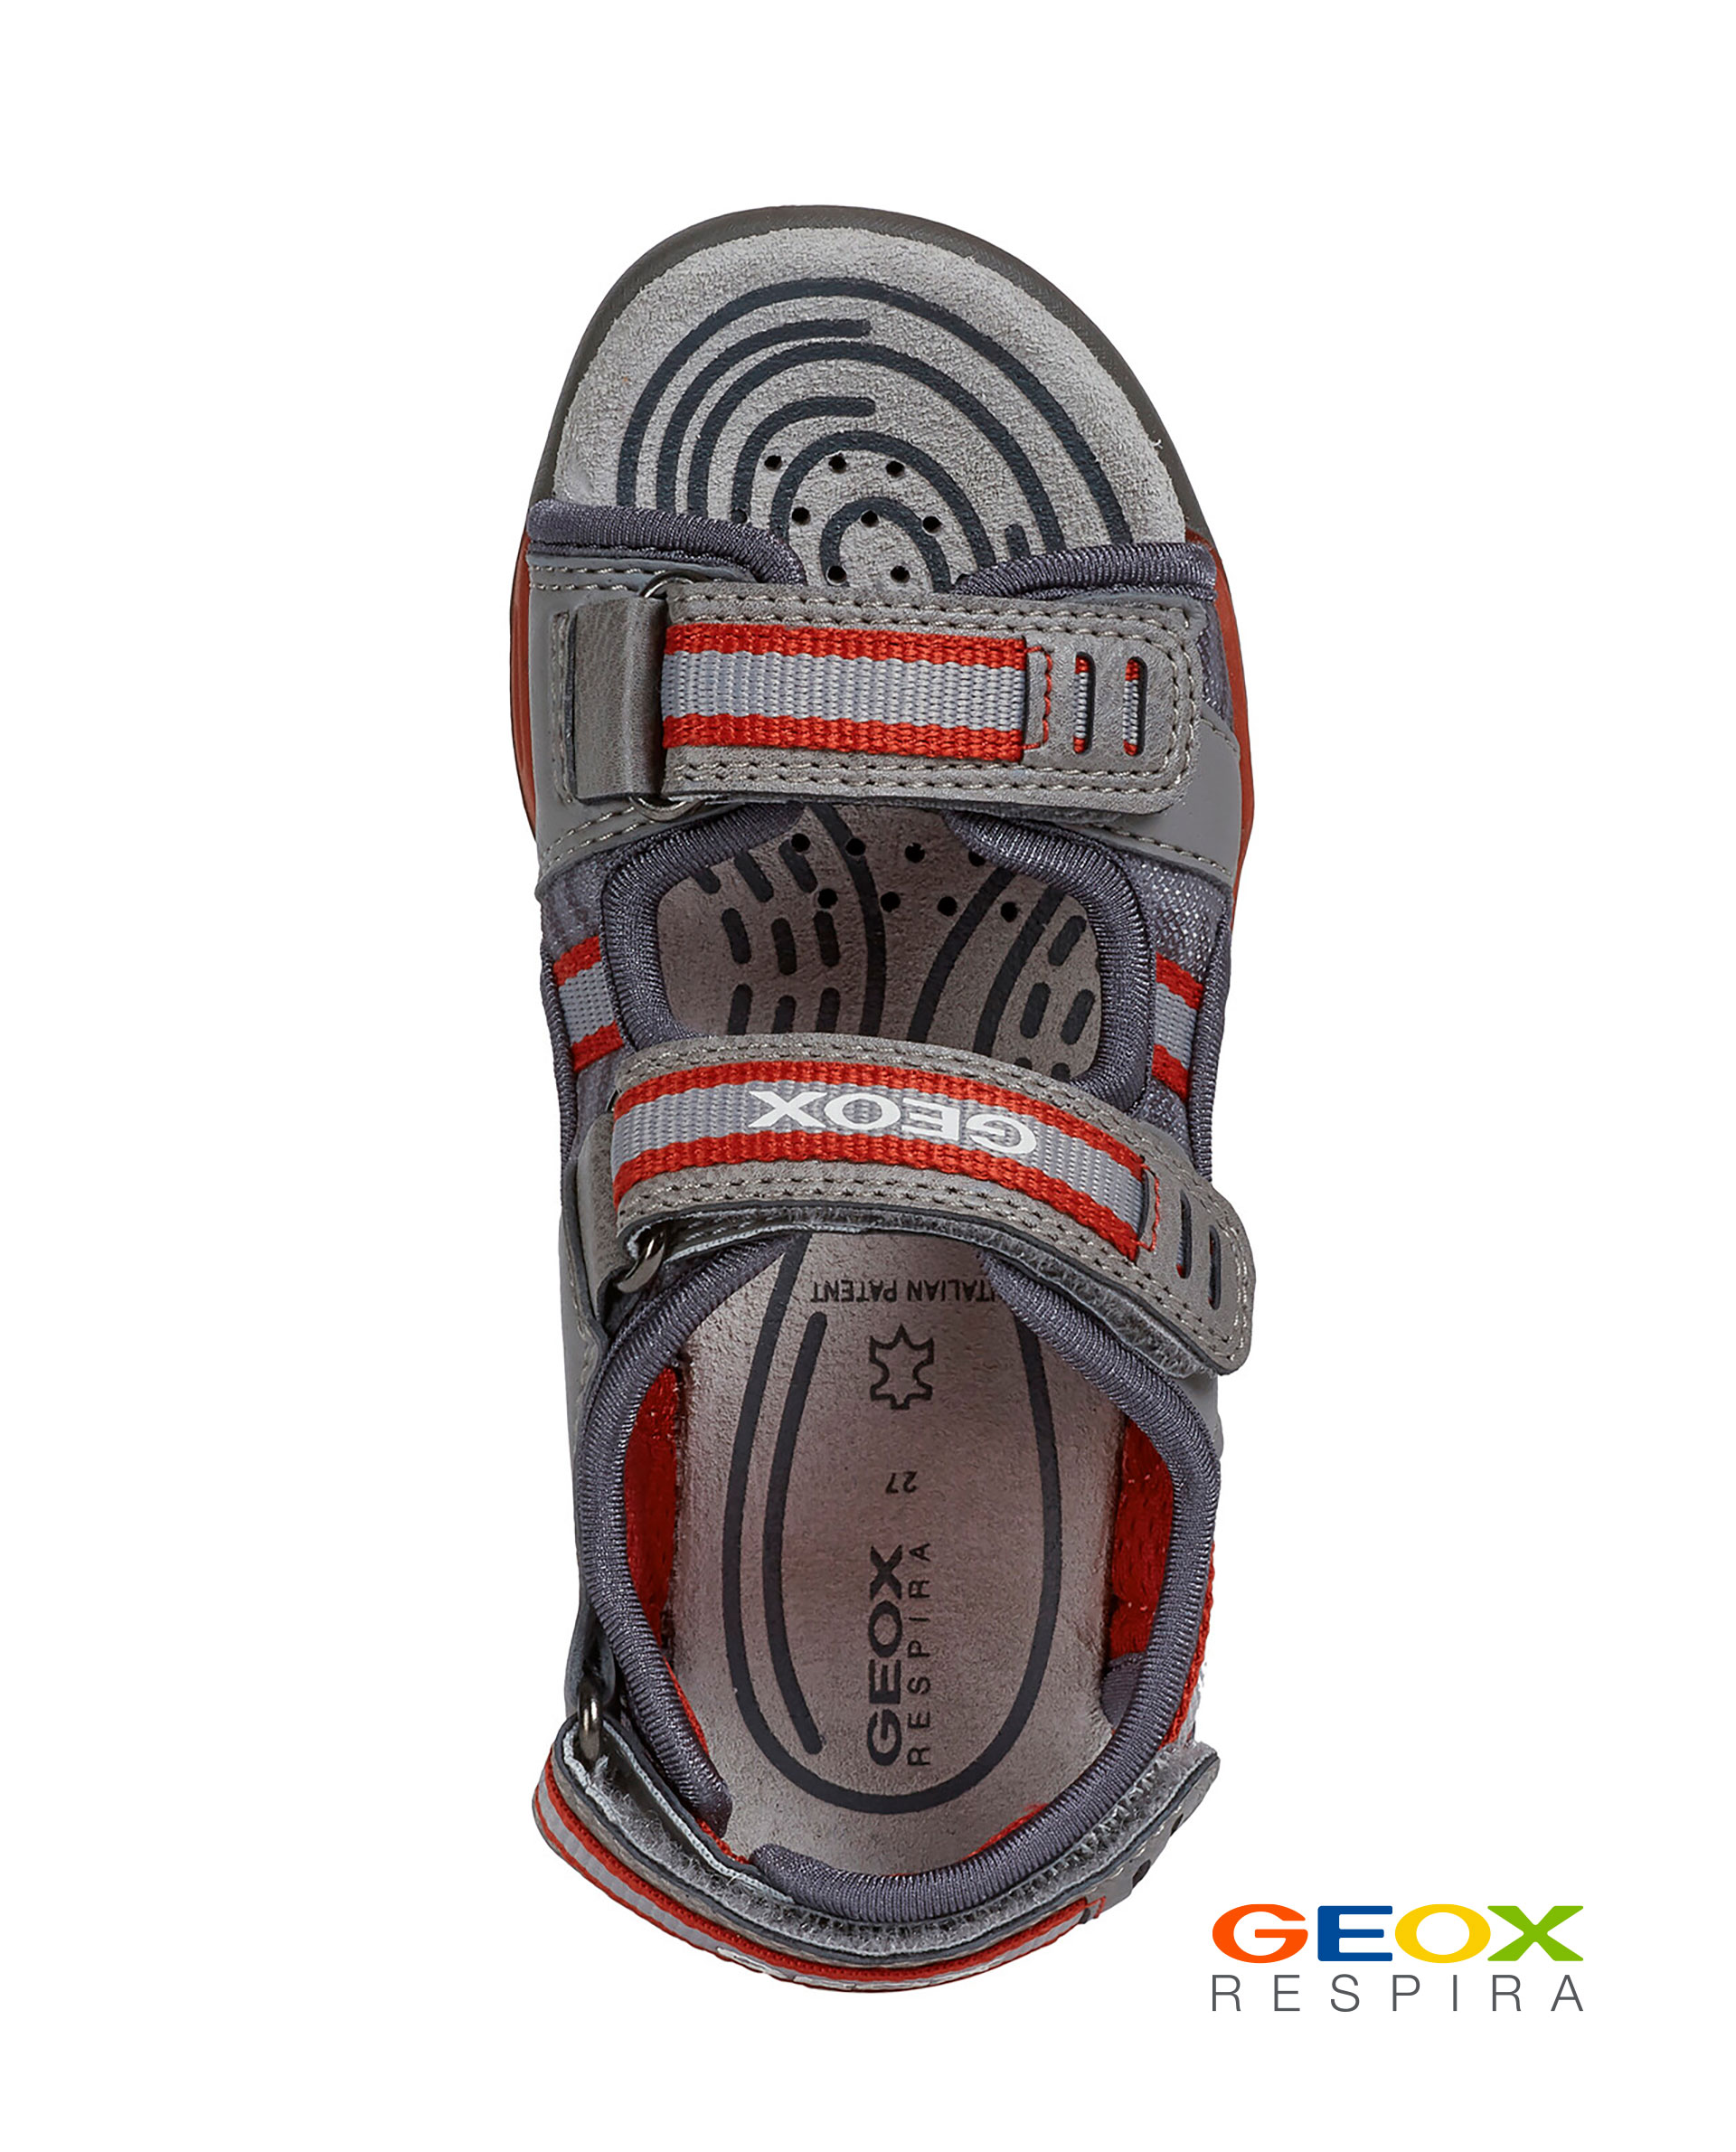 Серые сандалии Geox для мальчика J020RD014MEC0051, размер 32, цвет серый - фото 4